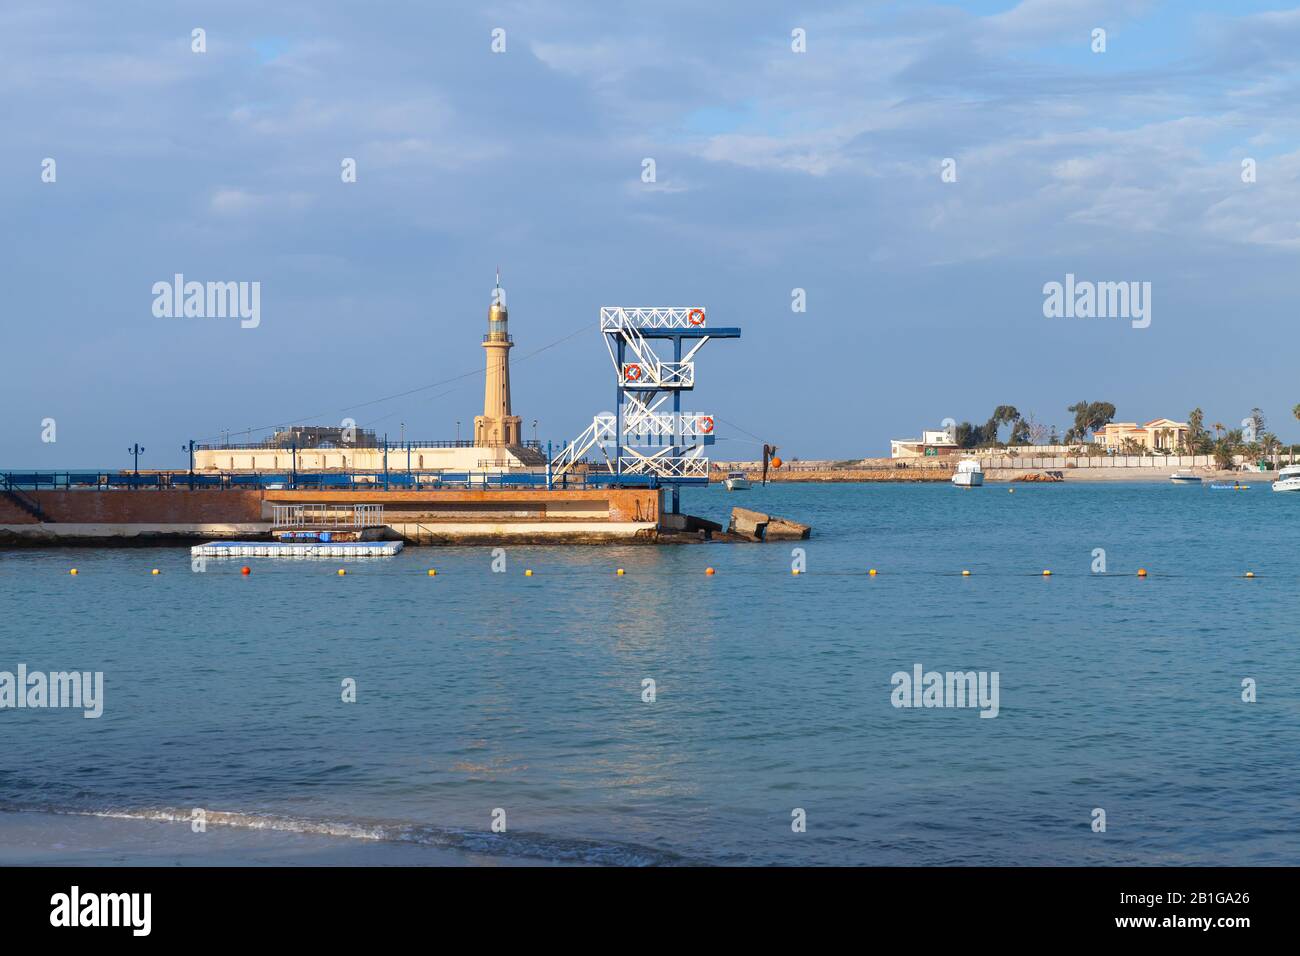 Plage de Montazah. Paysage côtier avec phare et tour de plongée sur un brise-lames. Alexandrie, Egypte Banque D'Images